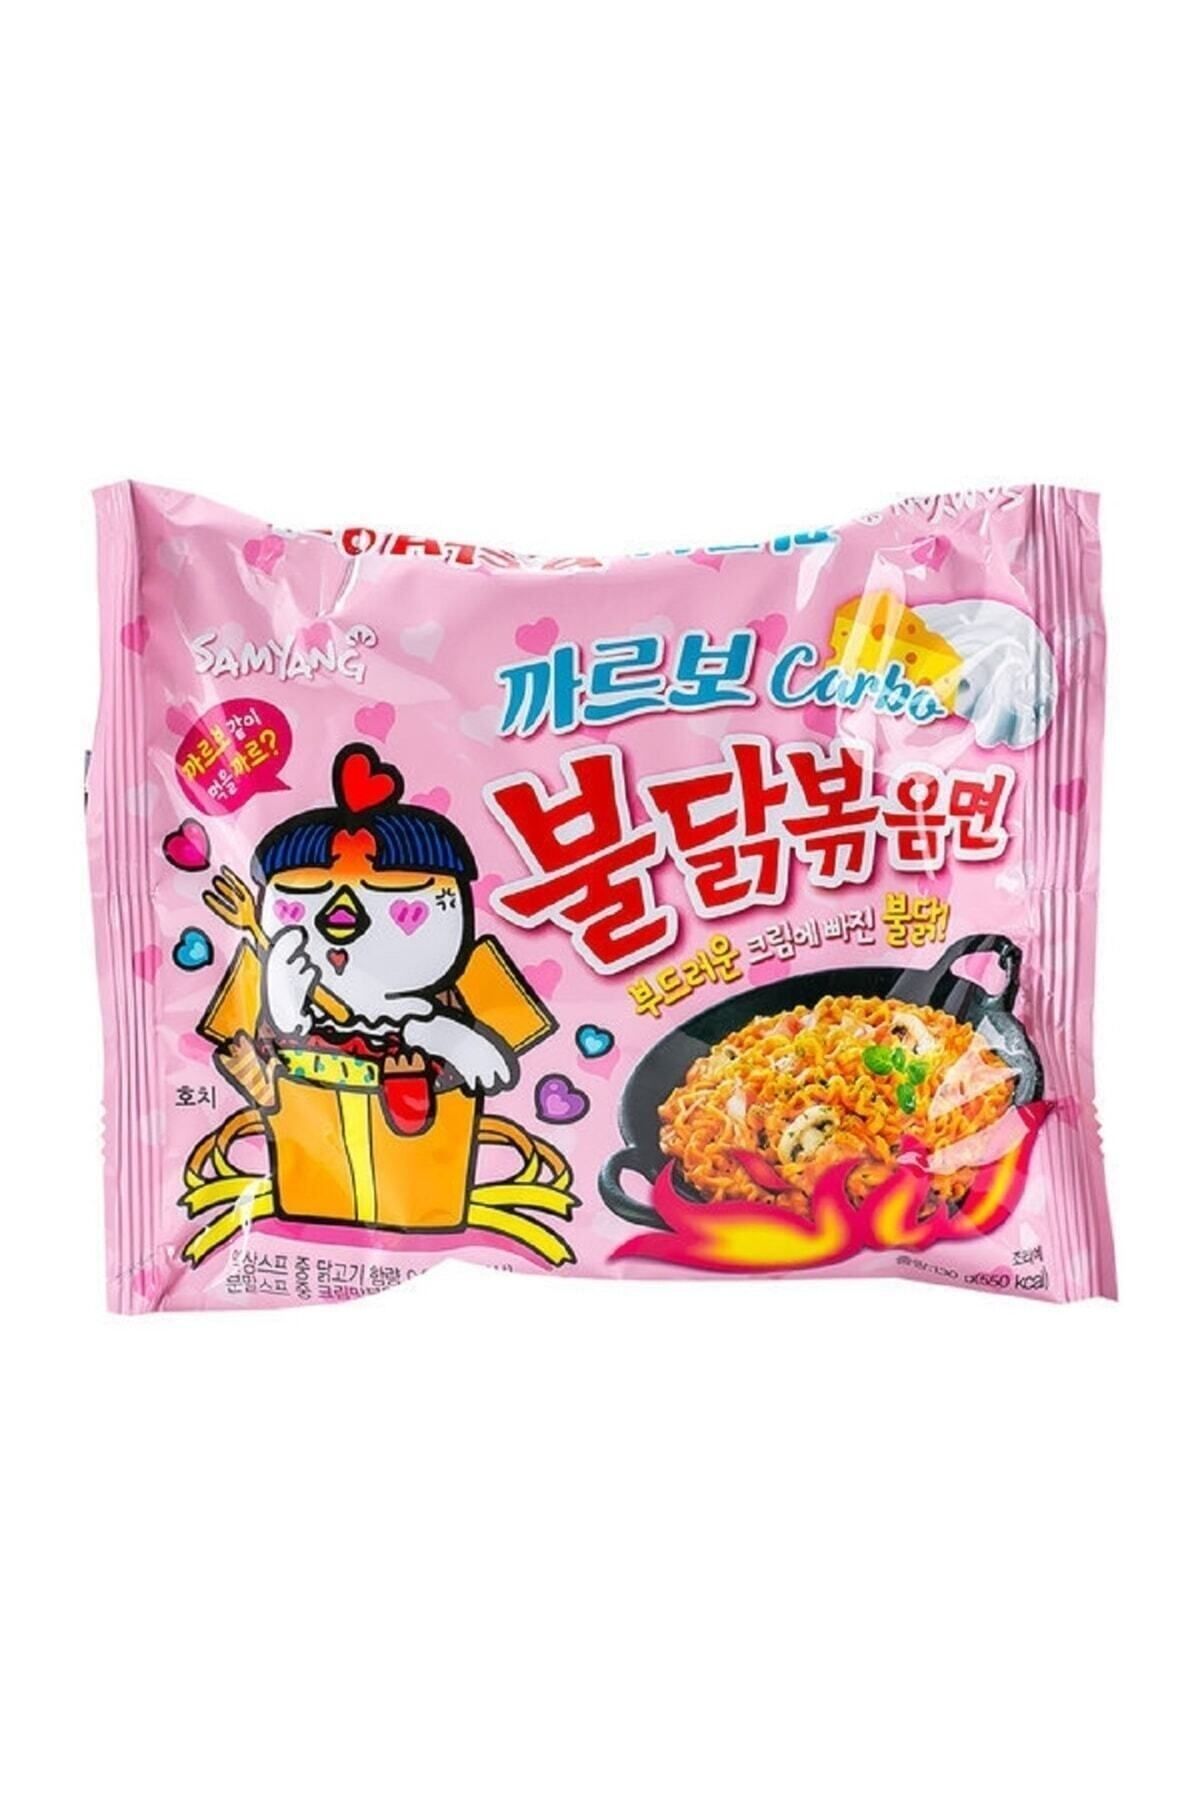 samyang Buldak Carbo Ramen Noodle Kore Helal